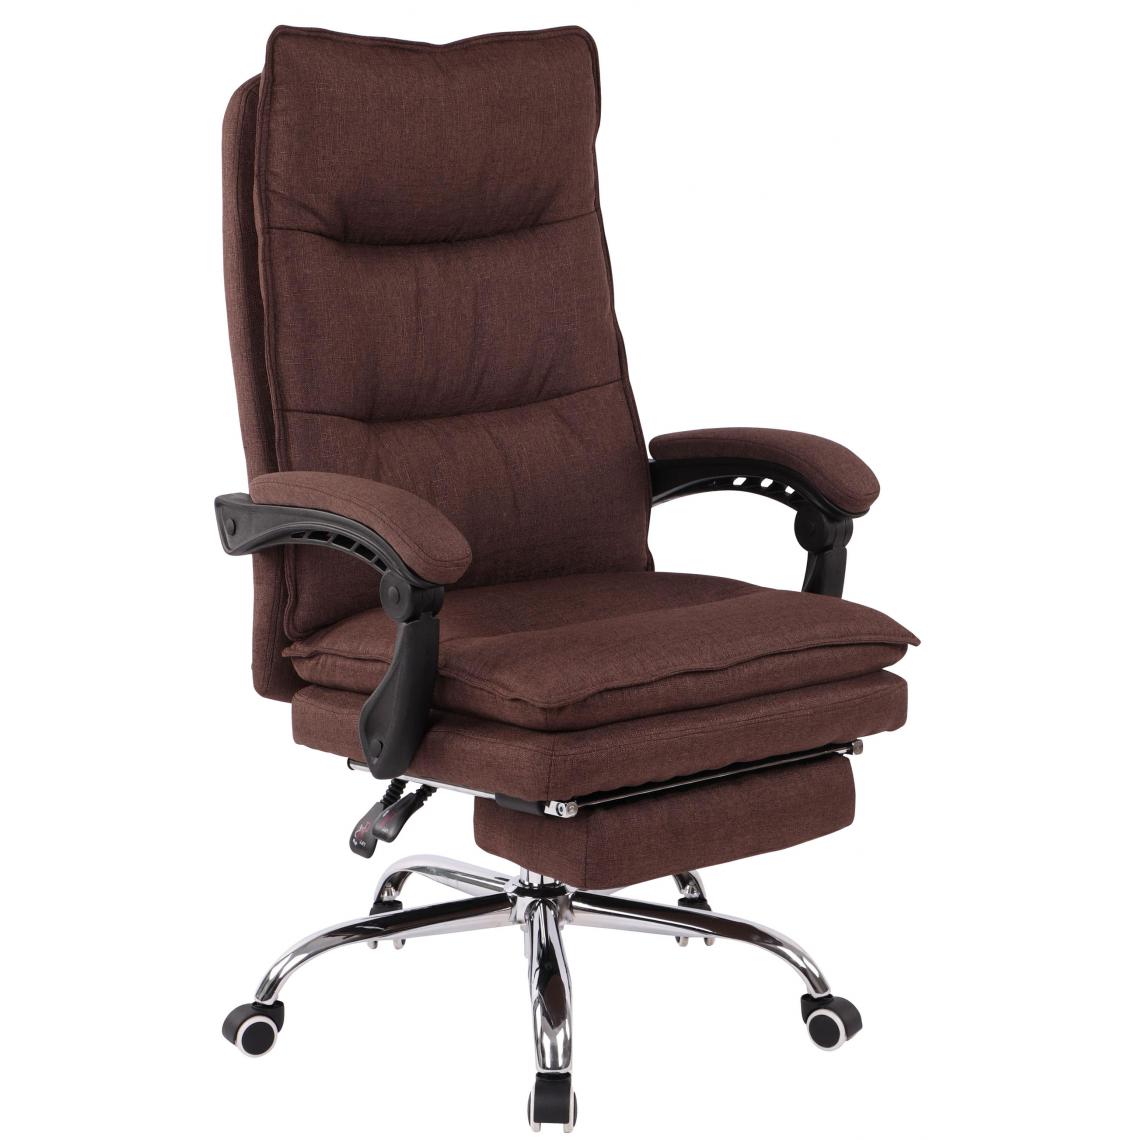 Icaverne - Splendide Chaise de bureau reference Georgetown Fabric couleur marron - Chaises